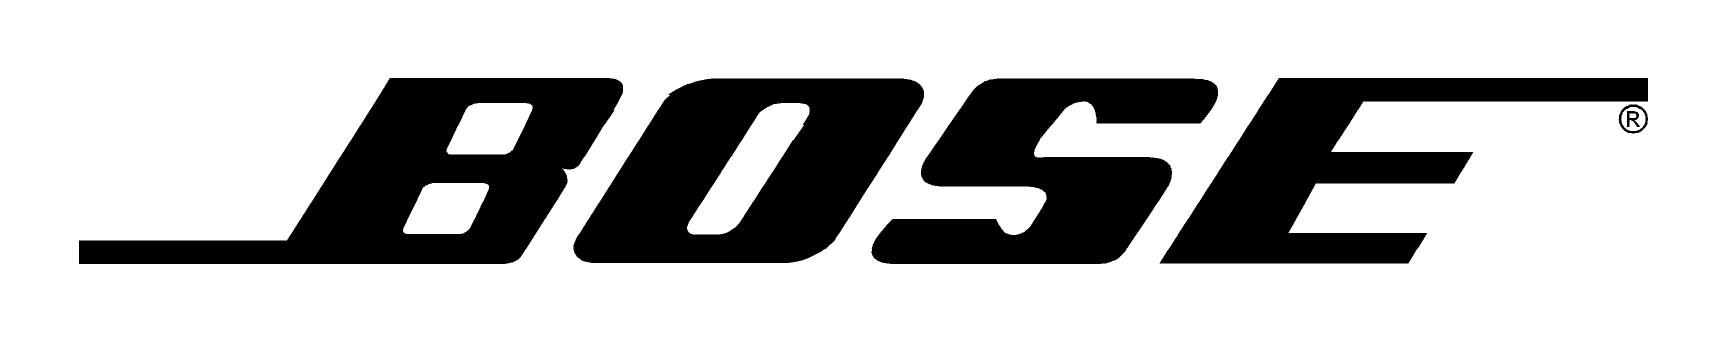 BOSE logo (tm)